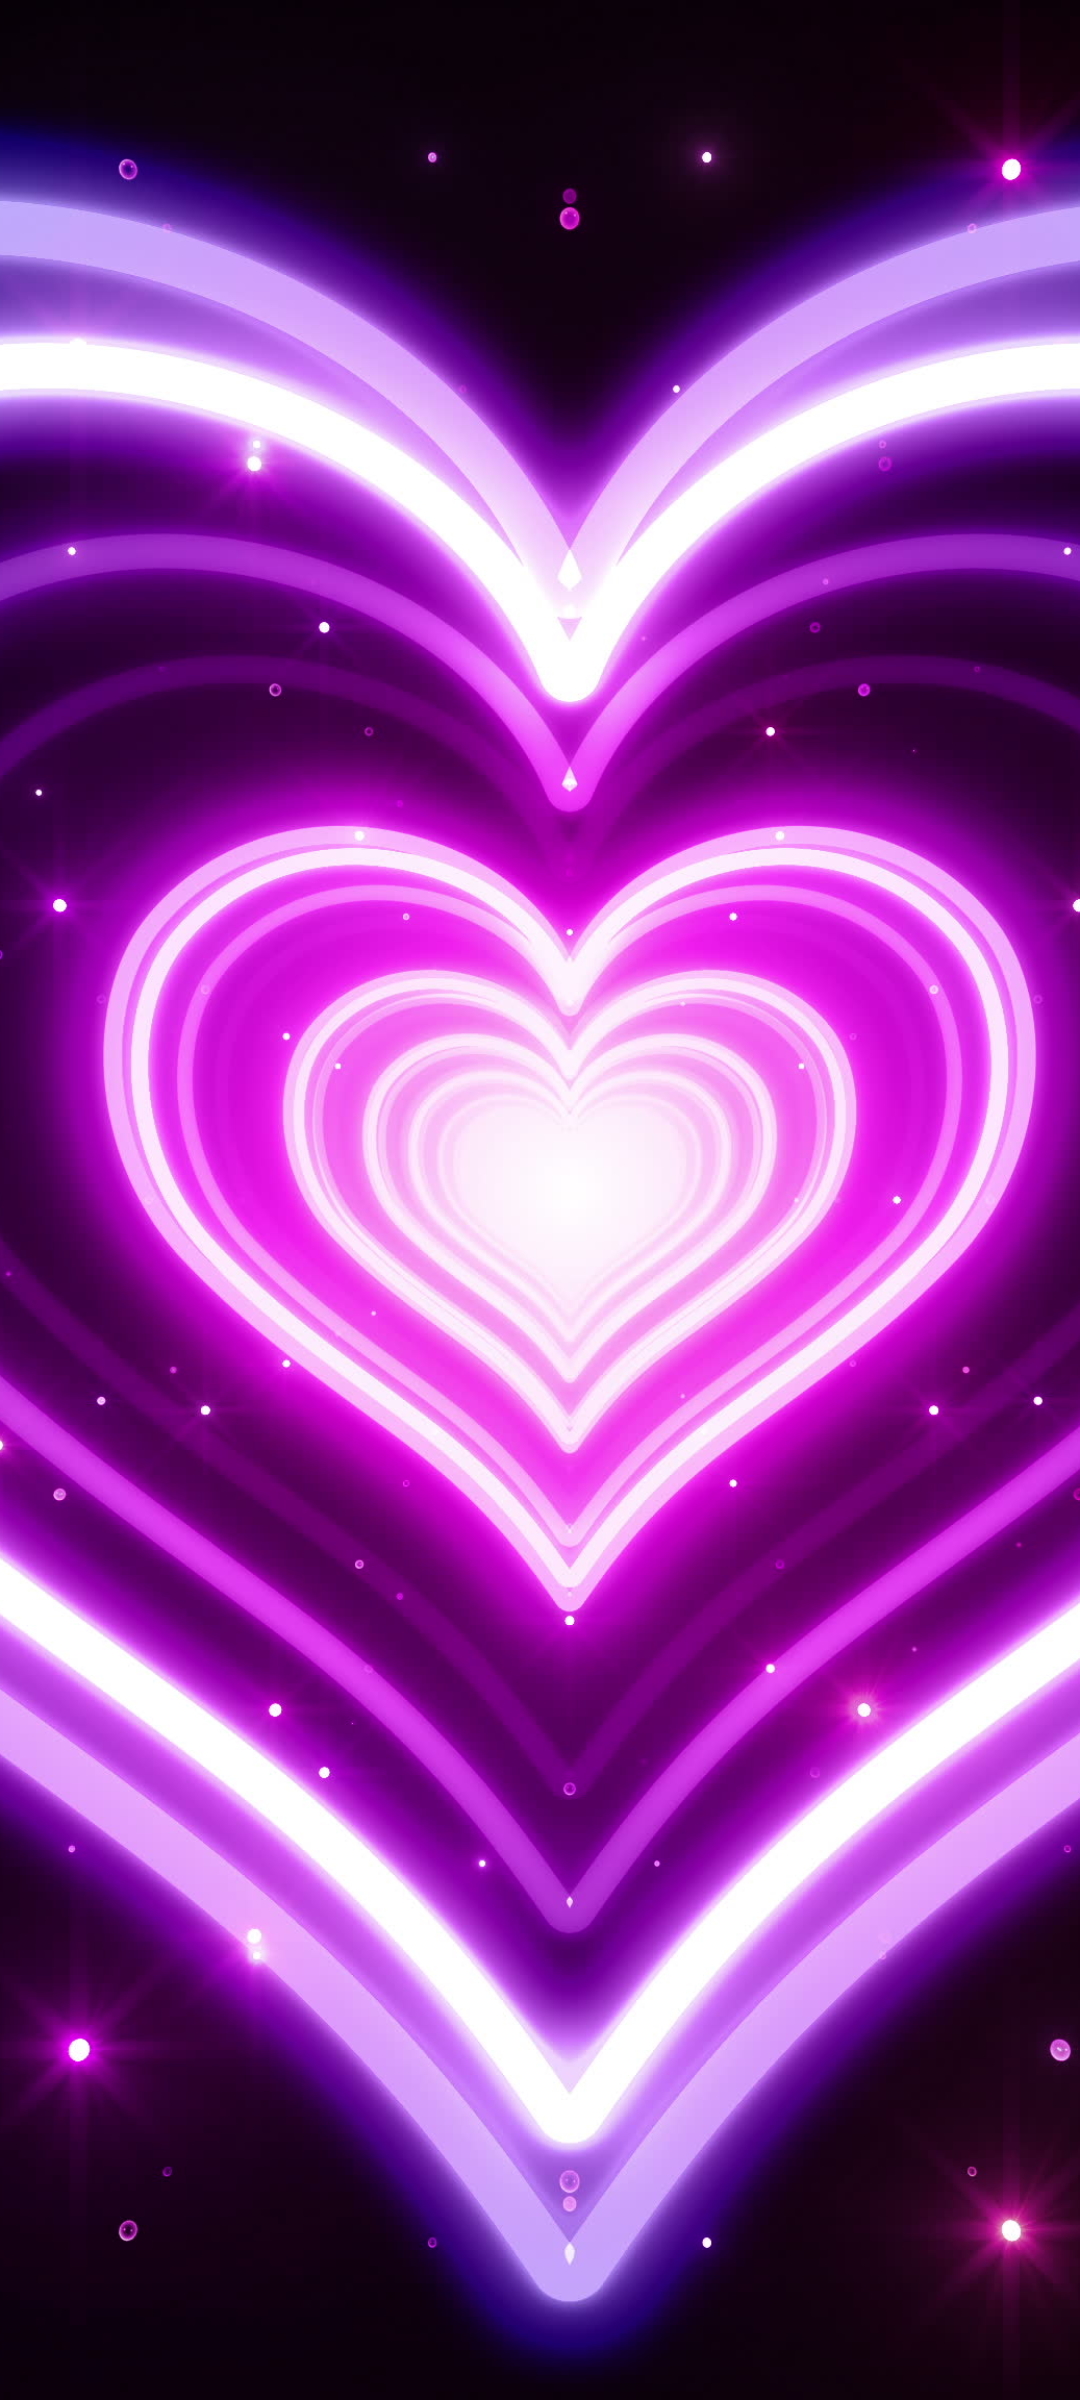 95562 Purple Heart Wallpaper Images Stock Photos  Vectors  Shutterstock